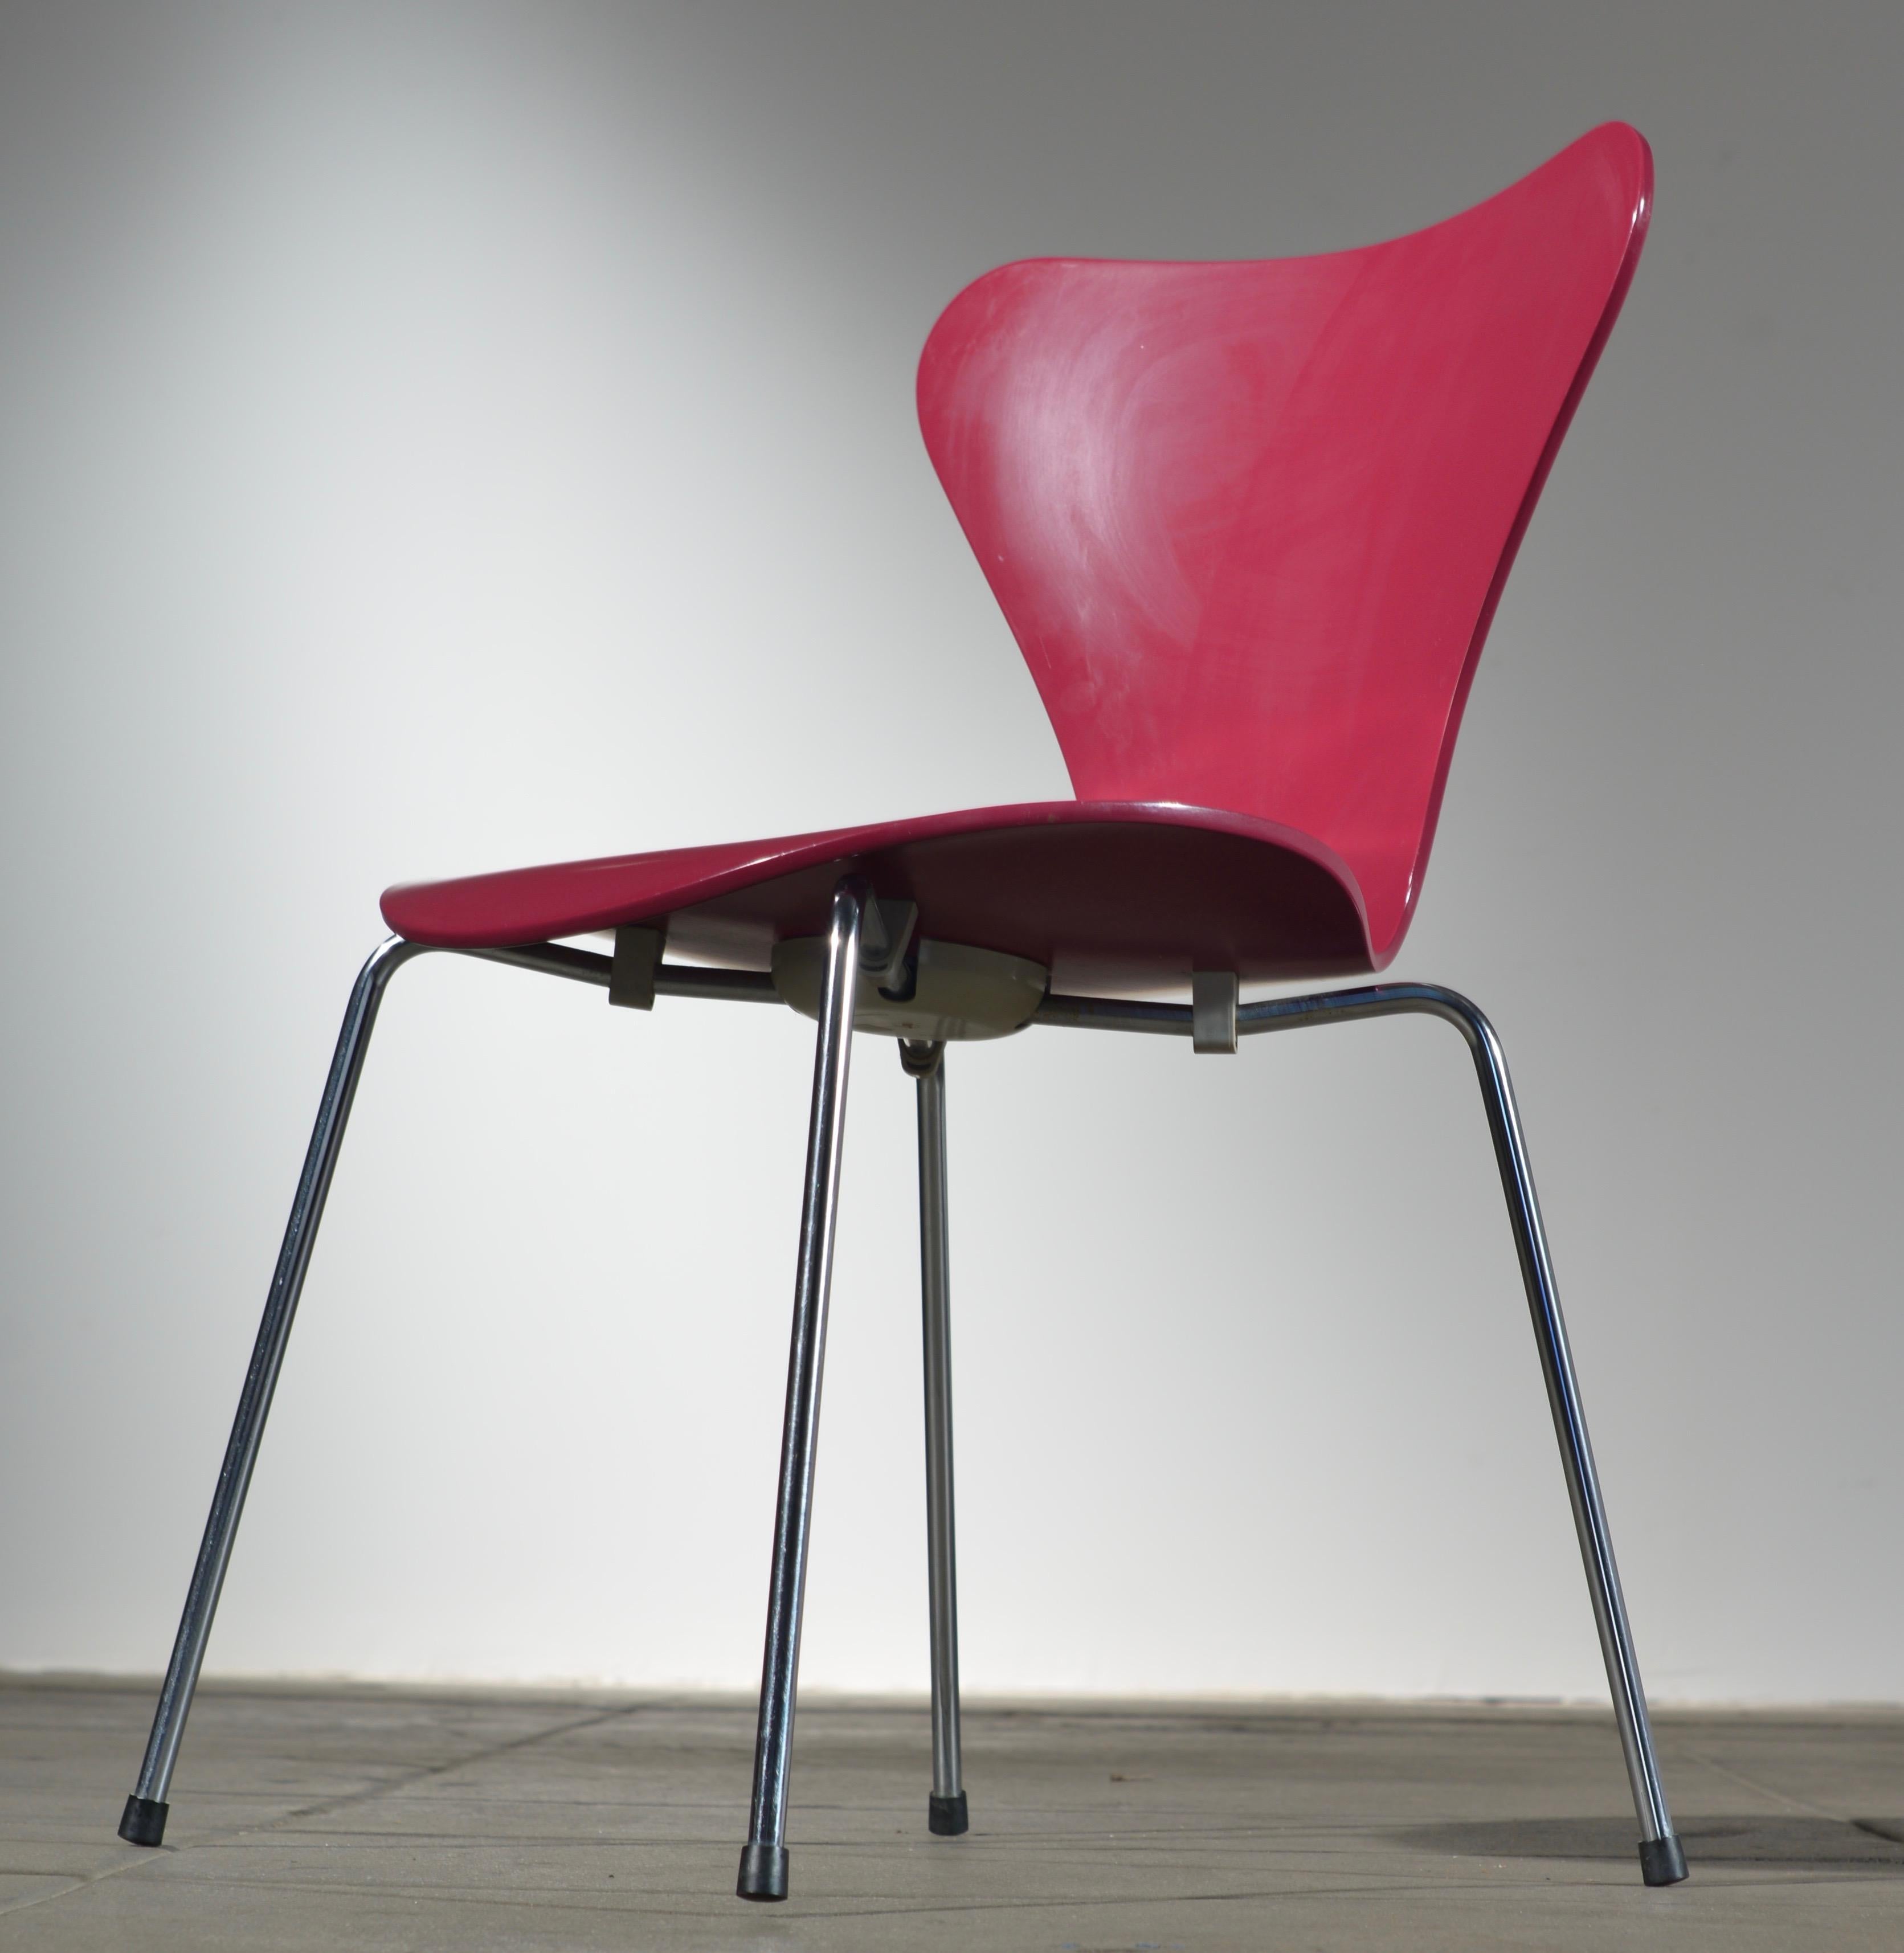 Perfekter Zustand Arne Jacobsen Stühle im Jahr 1950 entworfen und in den 1960er Jahren hergestellt mit Furnier ruht auf satiniertem Stahl Chrom. Lackierte, glatte Oberfläche ohne sichtbare Holzmaserung.